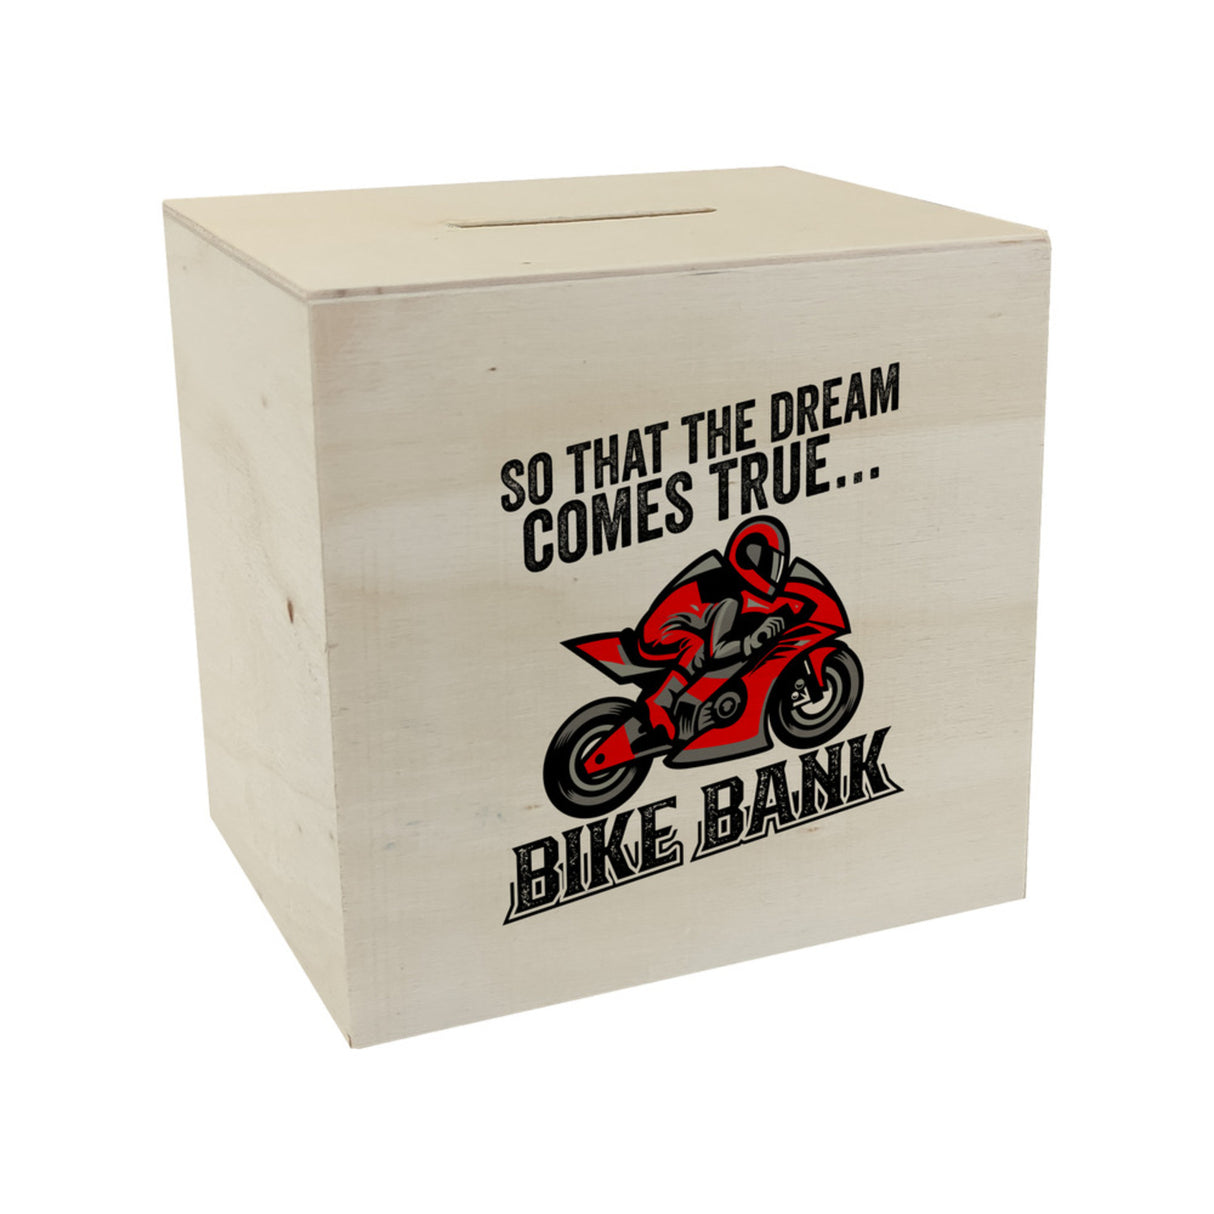 Bike Bank Spardose mit Spruch und Motorrad